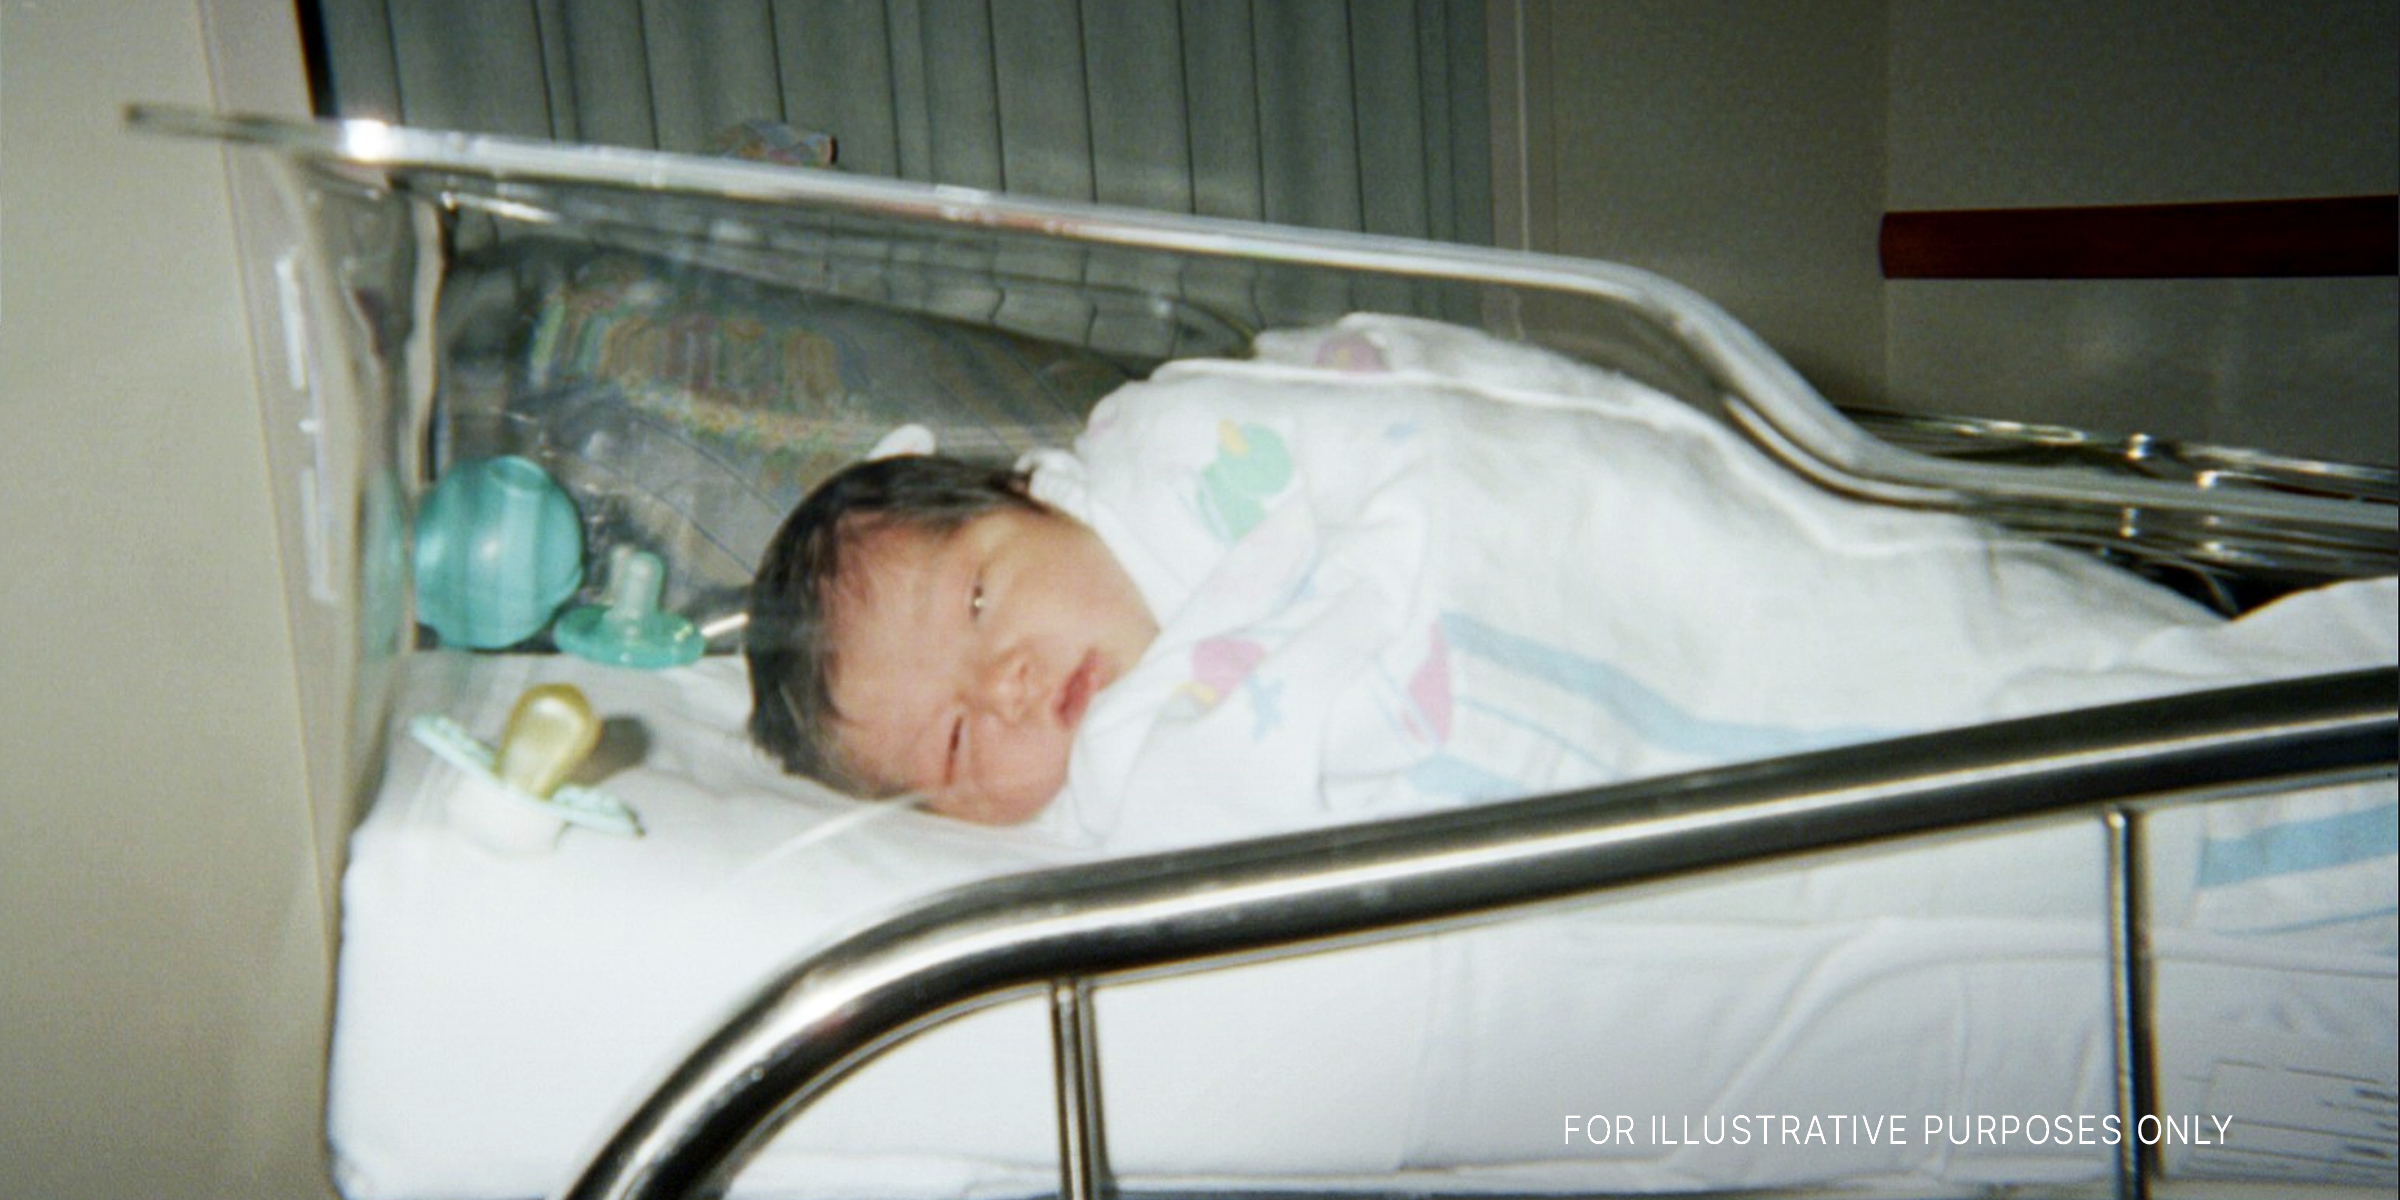 Ein neugeborenes Baby mit schwarzem Haar | Quelle: Flickr/Nadia Santoyo/(CC BY 2.0)